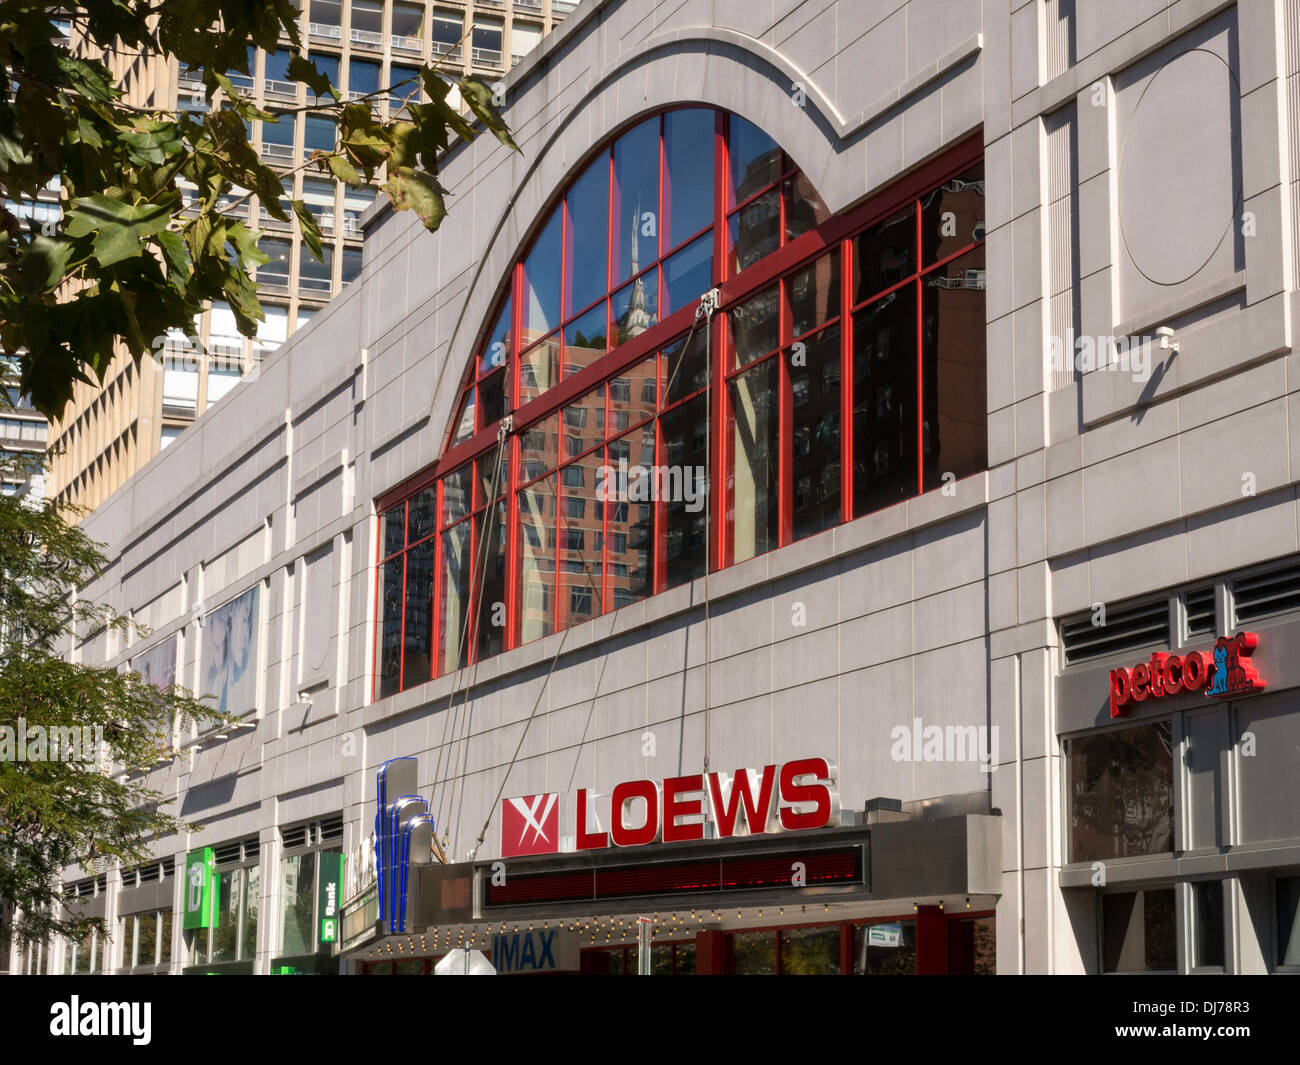 Kips Bay Nachbarschaftsläden & Loews Kino, NYC Stockfoto